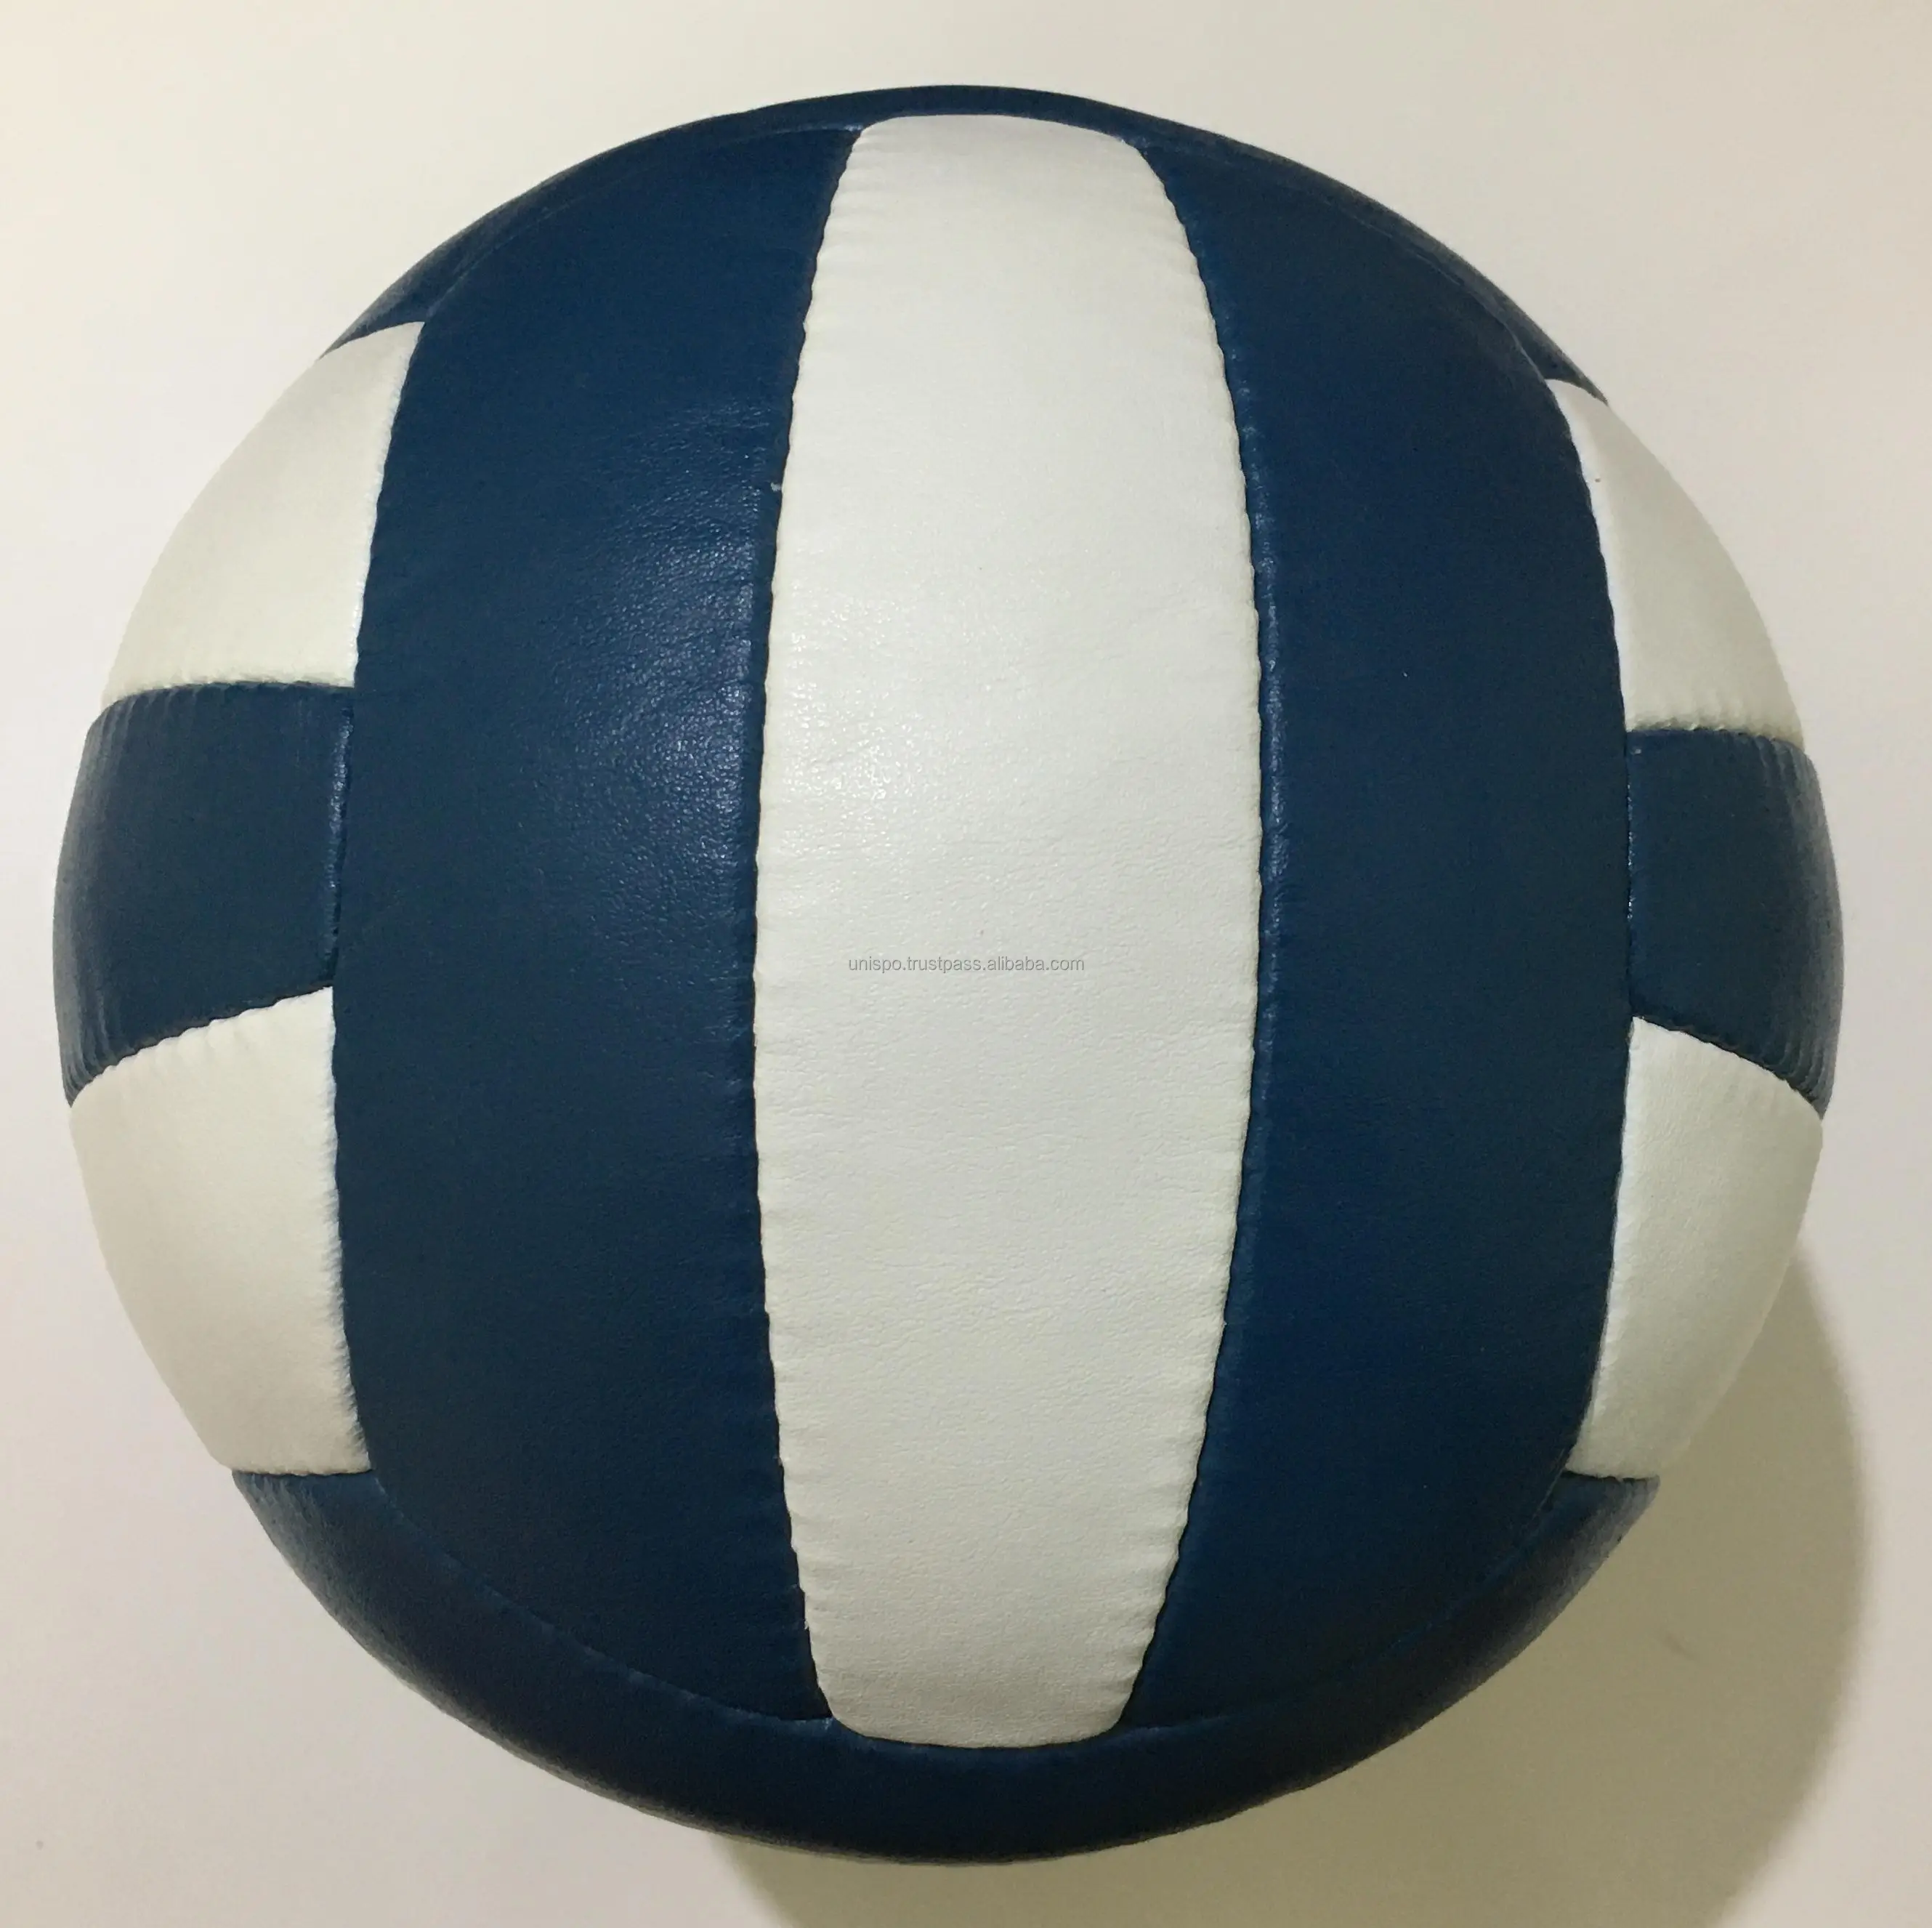 Hoge Kwaliteit Synthetische Rubber Volleybal Sportbal Voor Sporters En Sportliefhebbers Volleybal